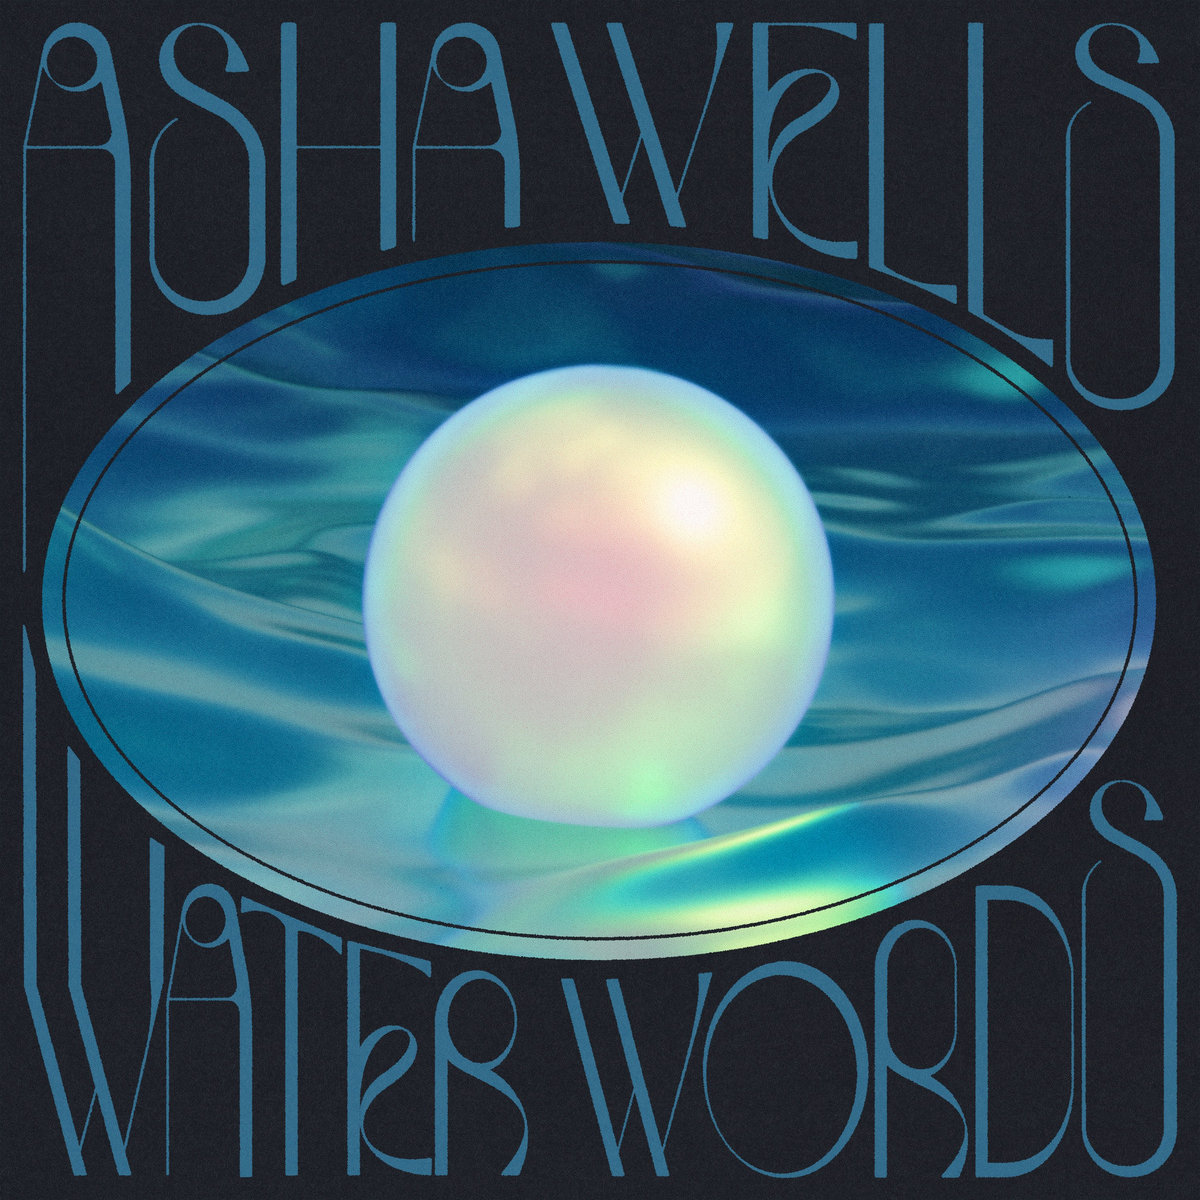 Album: Asha Wells – Water Words